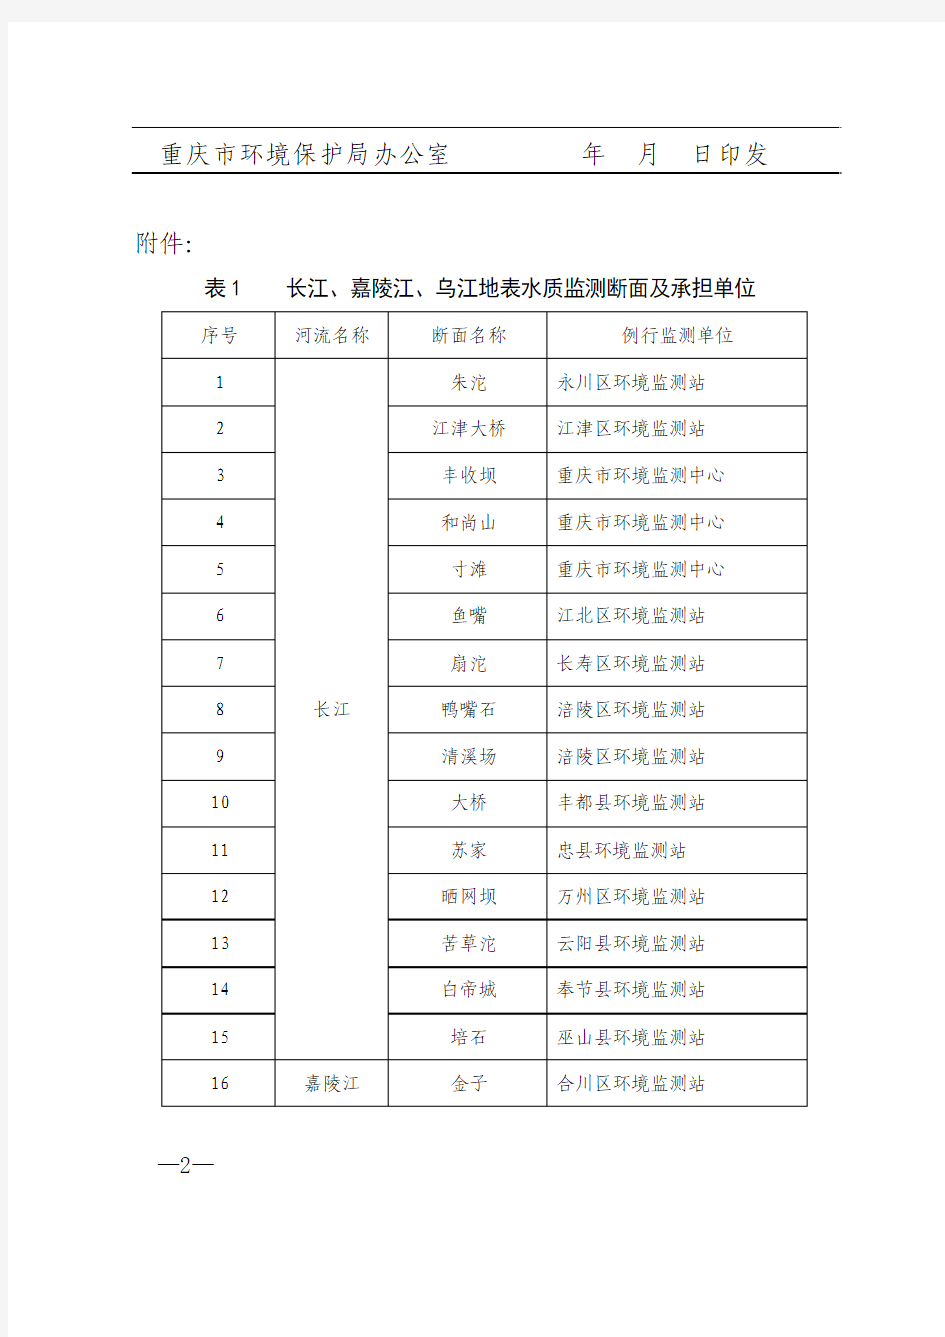 重庆市环境保护局关于统一长江、嘉陵江、乌江水质监测时间的通知